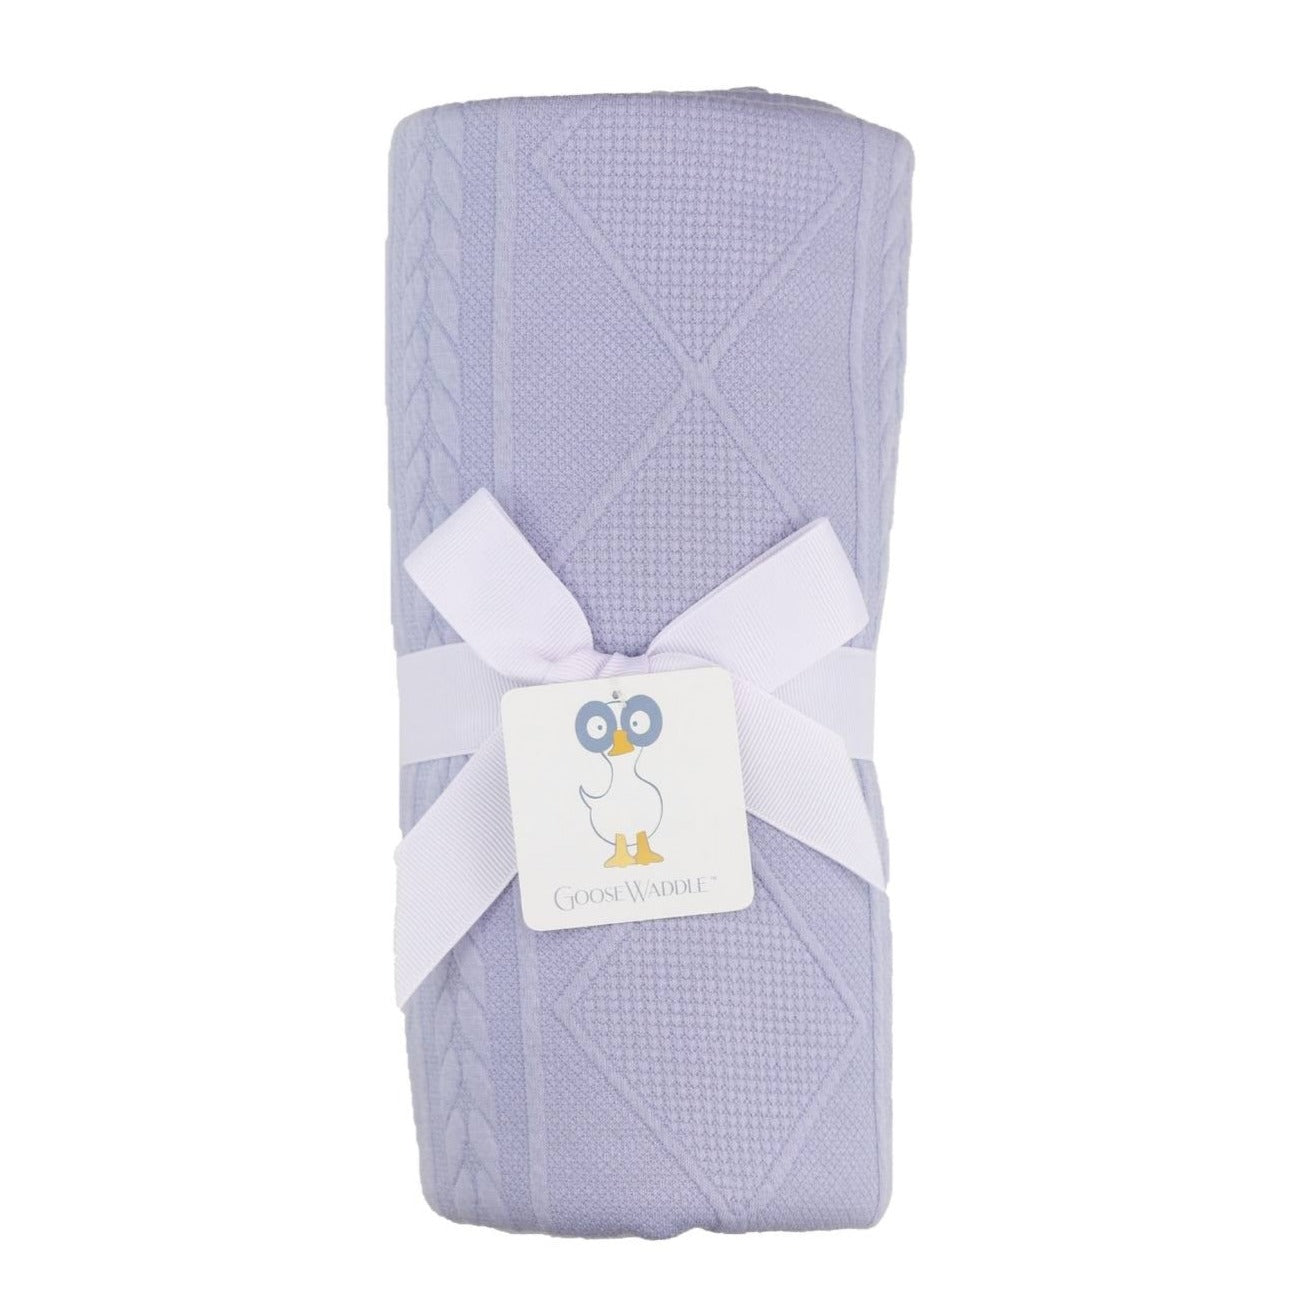 Lavender Knit Blanket